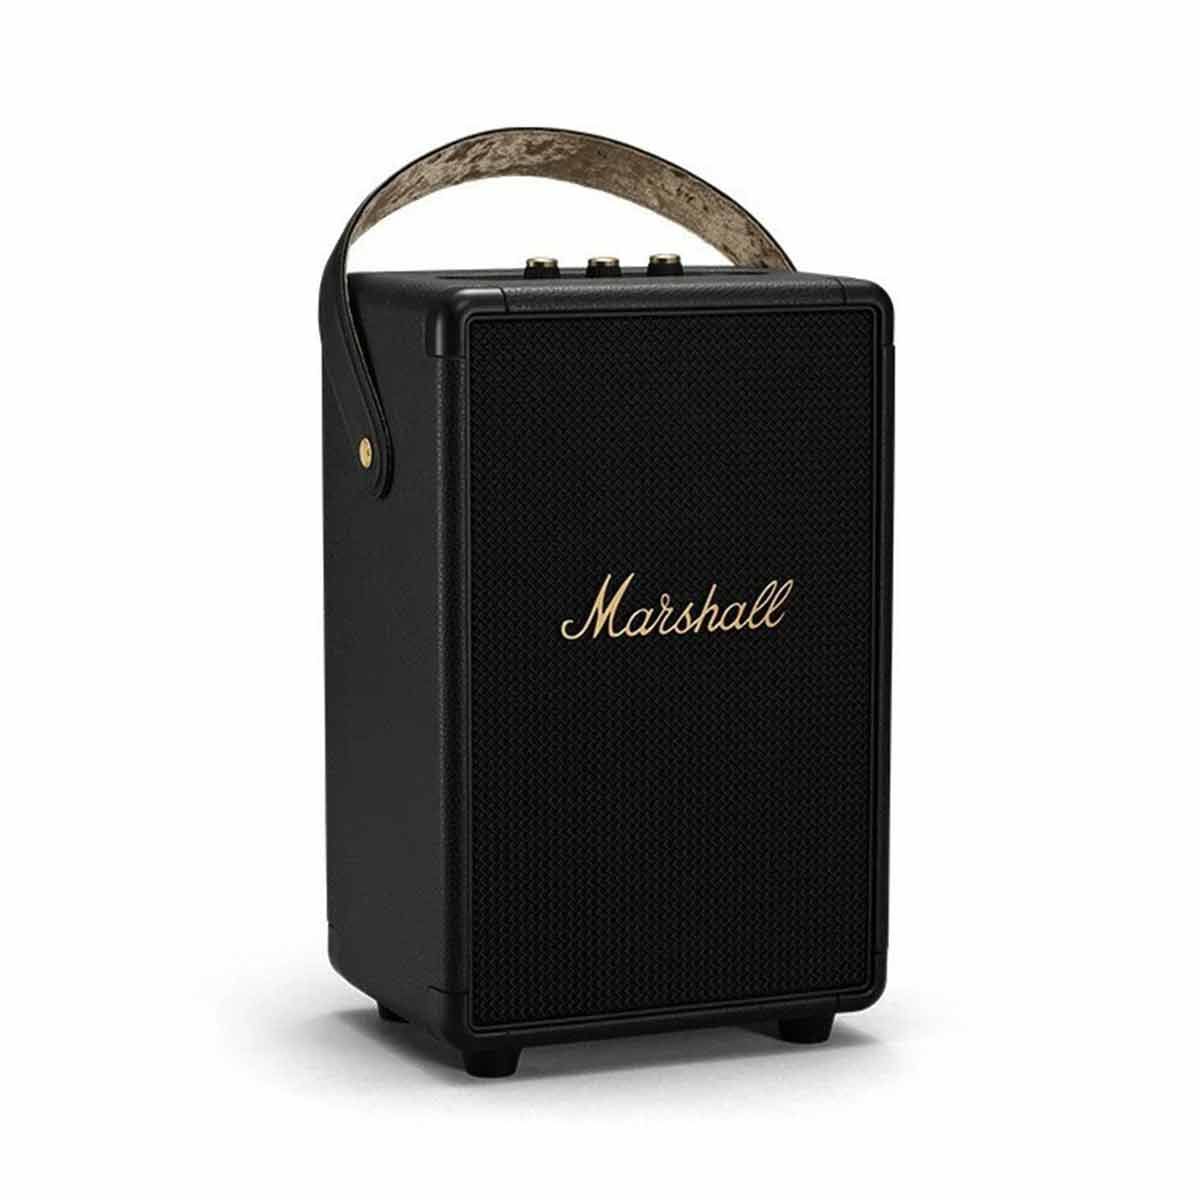 MARSHALL ลำโพงไร้สาย Bluetooth Speaker รุ่น TUFTONBB Bluetooth Speaker